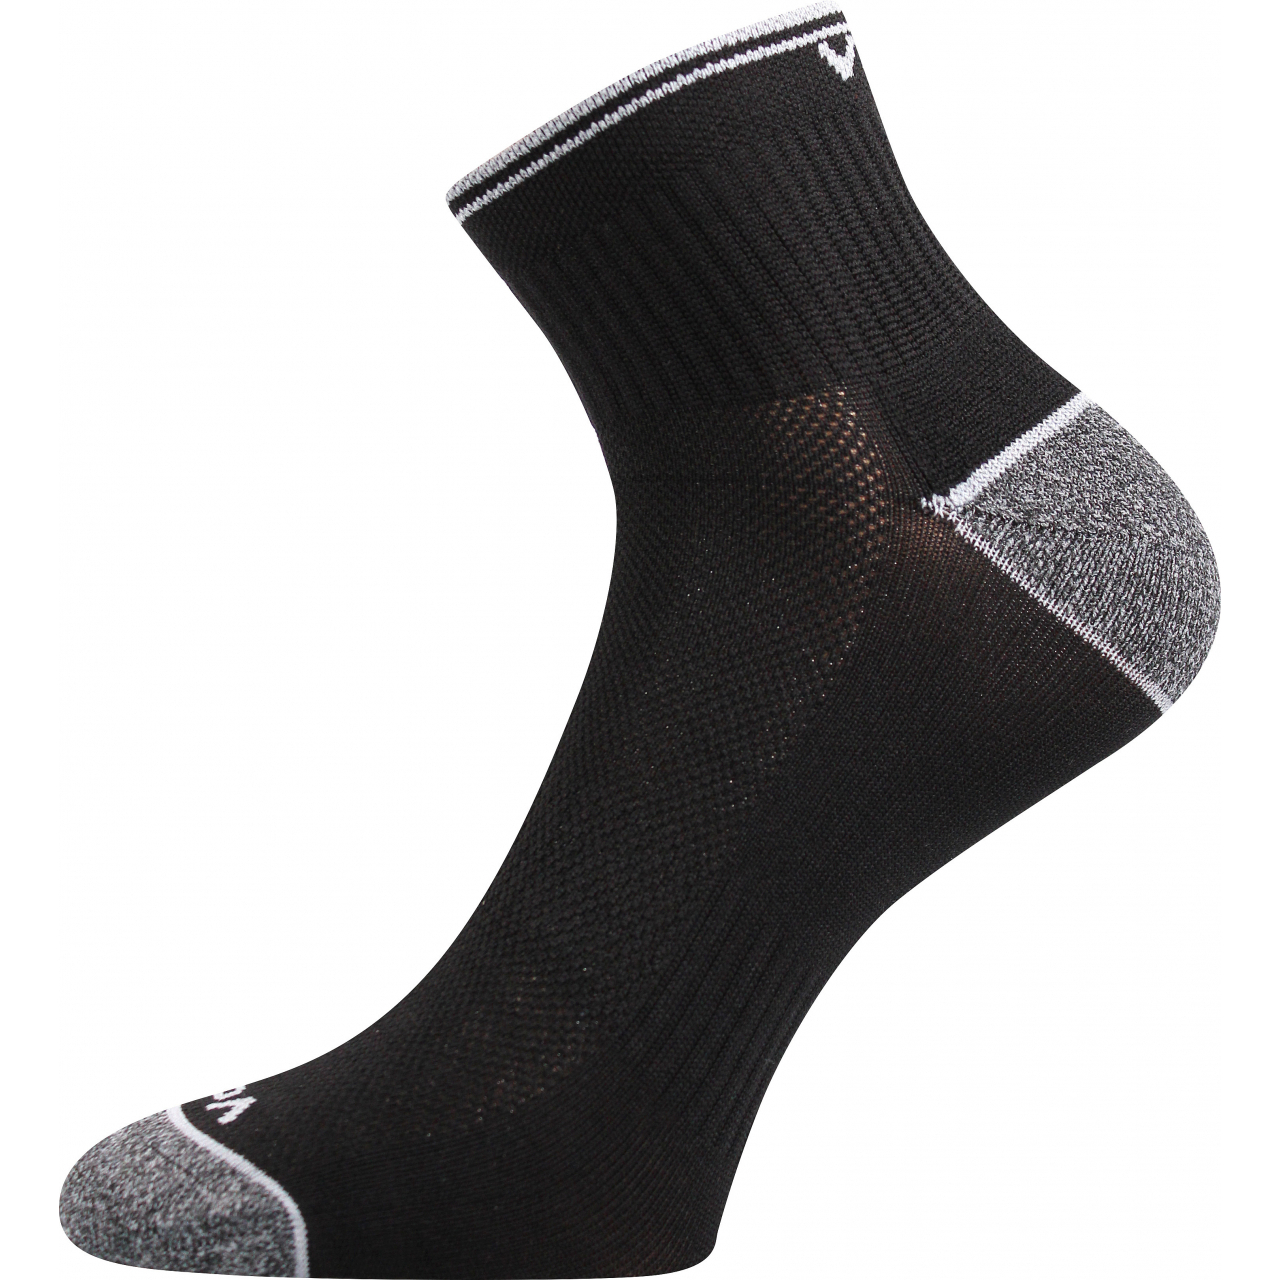 Ponožky unisex sportovní Voxx Ray - černé, 39-42